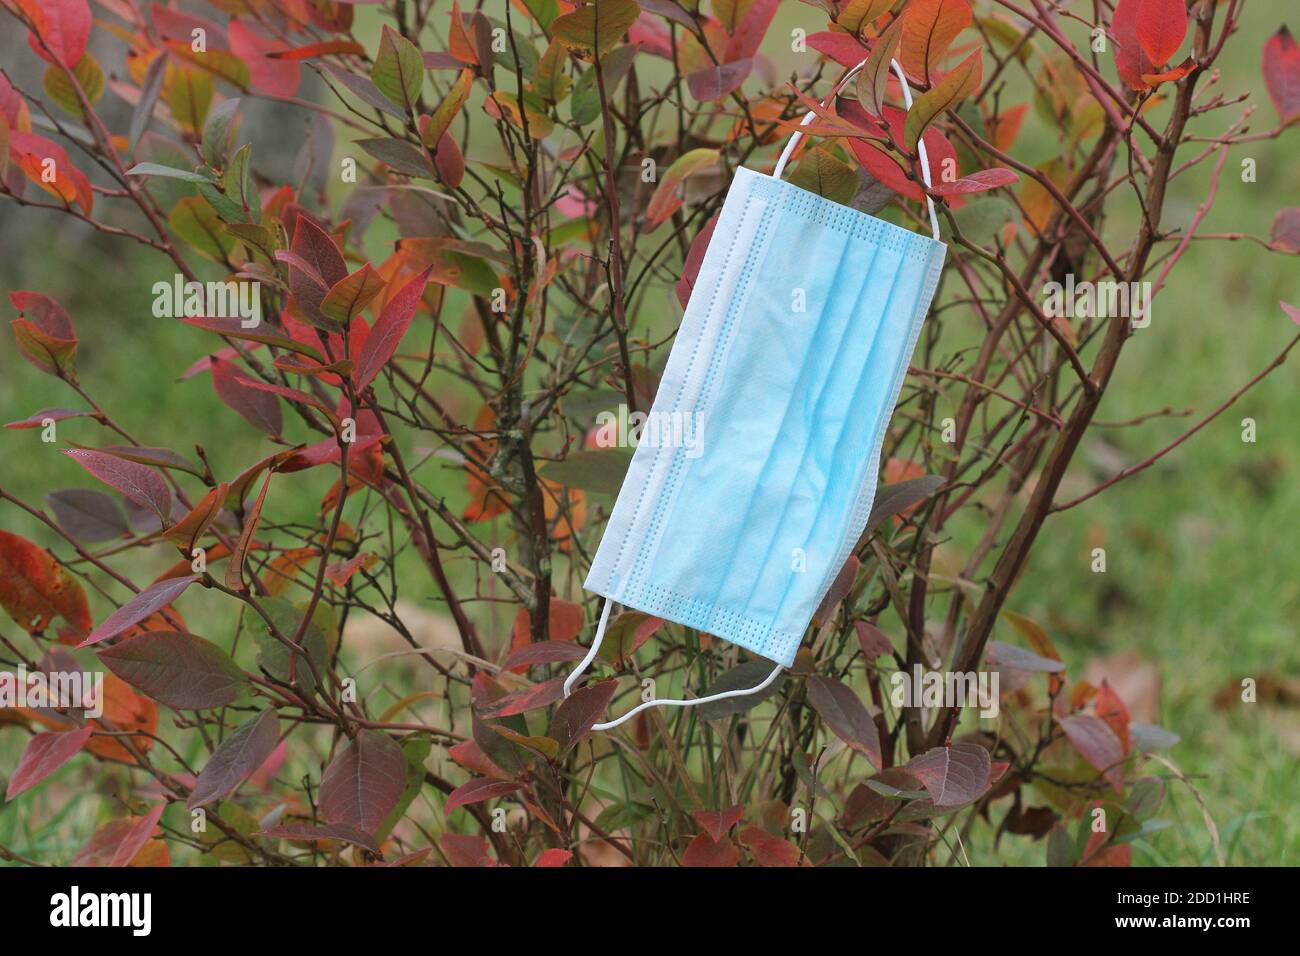 Masque jetable accroché à la branche autour des feuilles de plante En automne, pendant la deuxième vague pandémique de Covid19 Banque D'Images